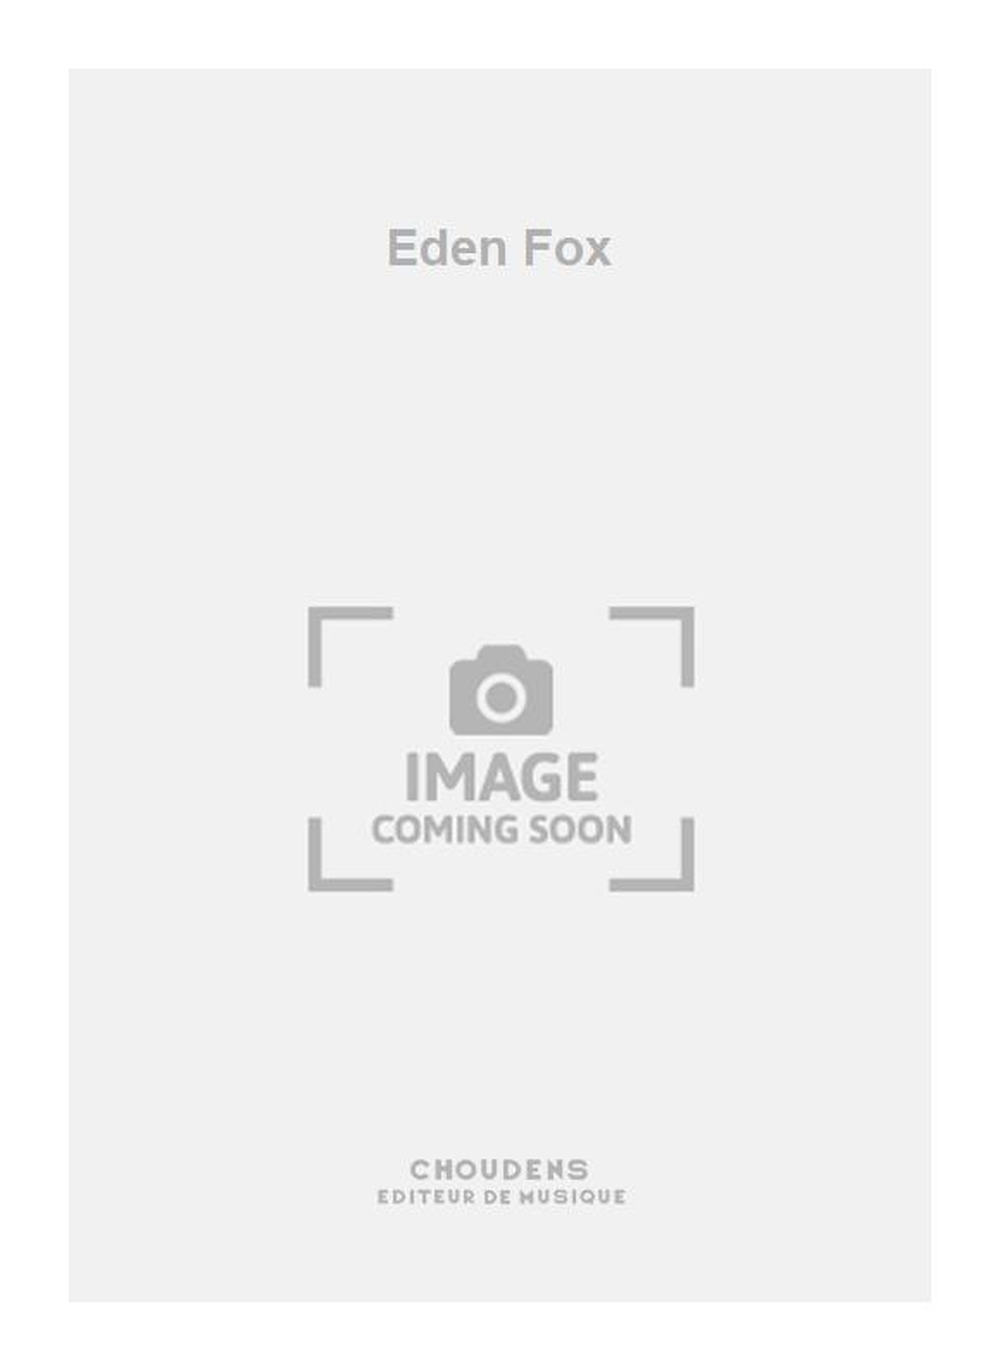 Jacques Ibert: Eden Fox